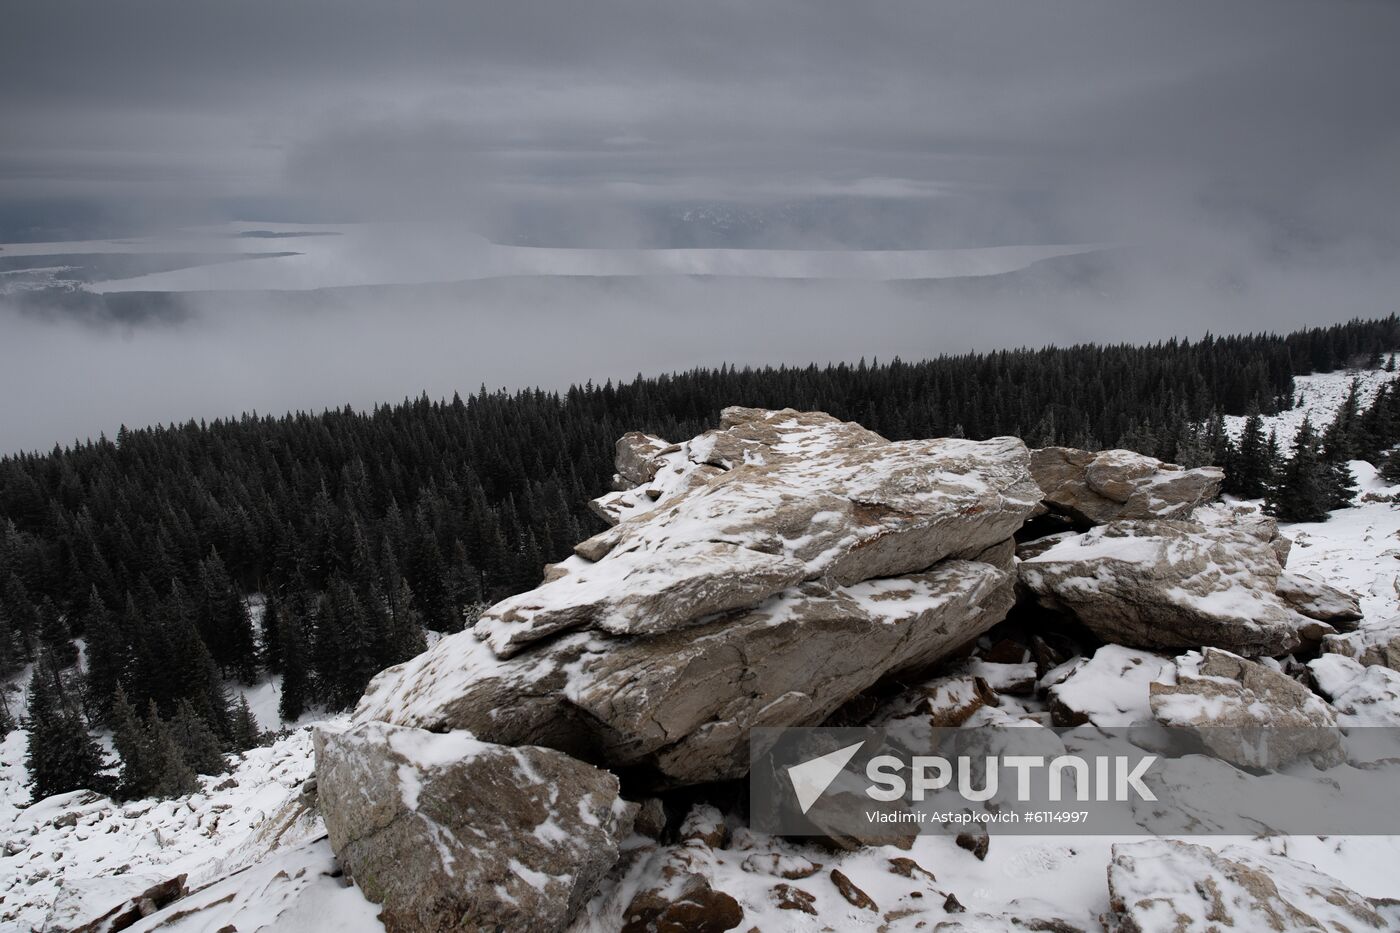 Russia Zyuratkul National Park